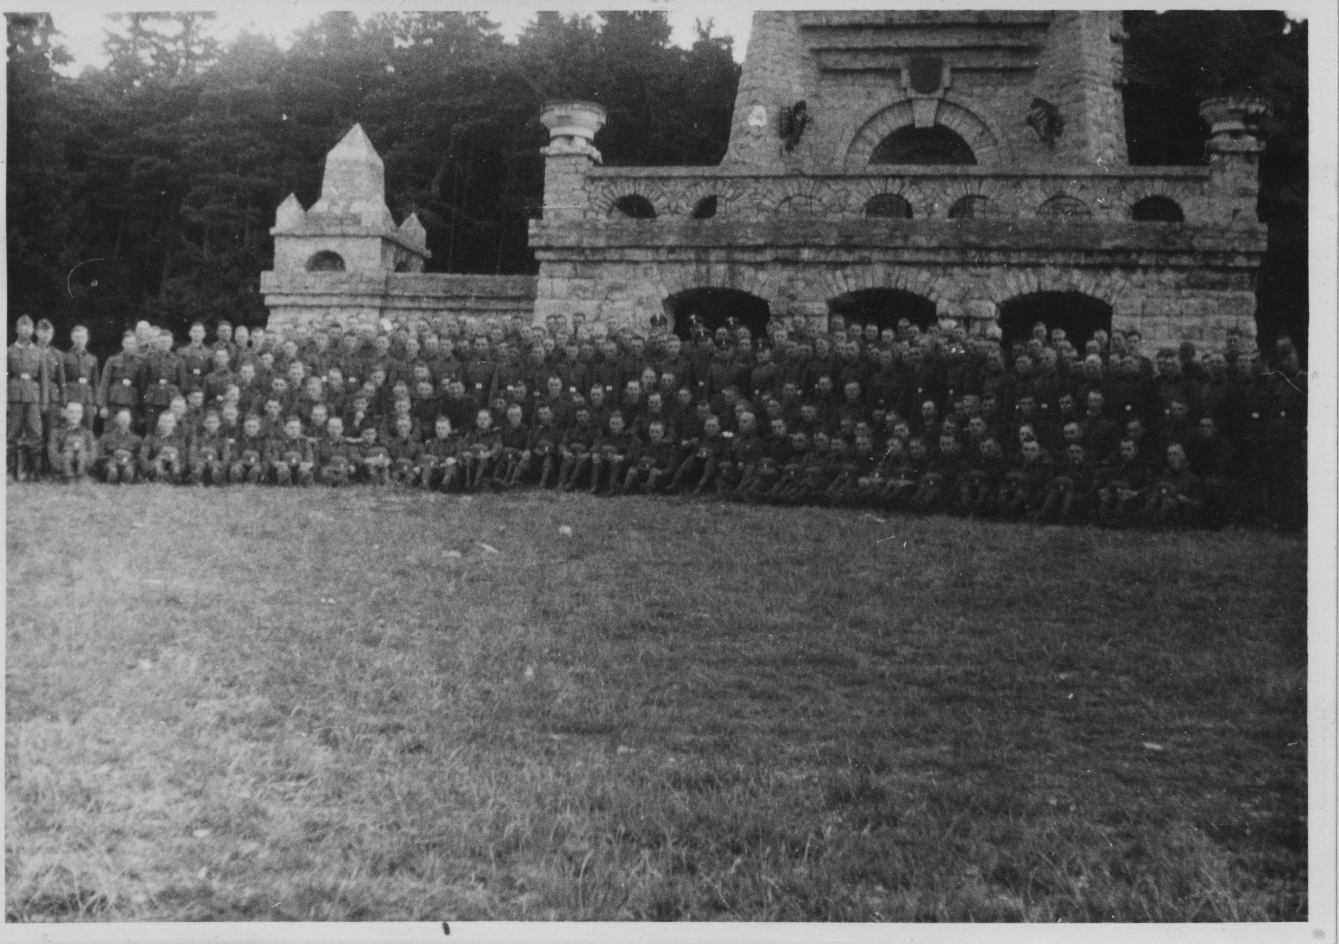 Gruppenbild von Angehörigen einer Rekruteneinheit der SS-Totenkopfstandarte 14 am Fuße des Bismarckdenkmals. 